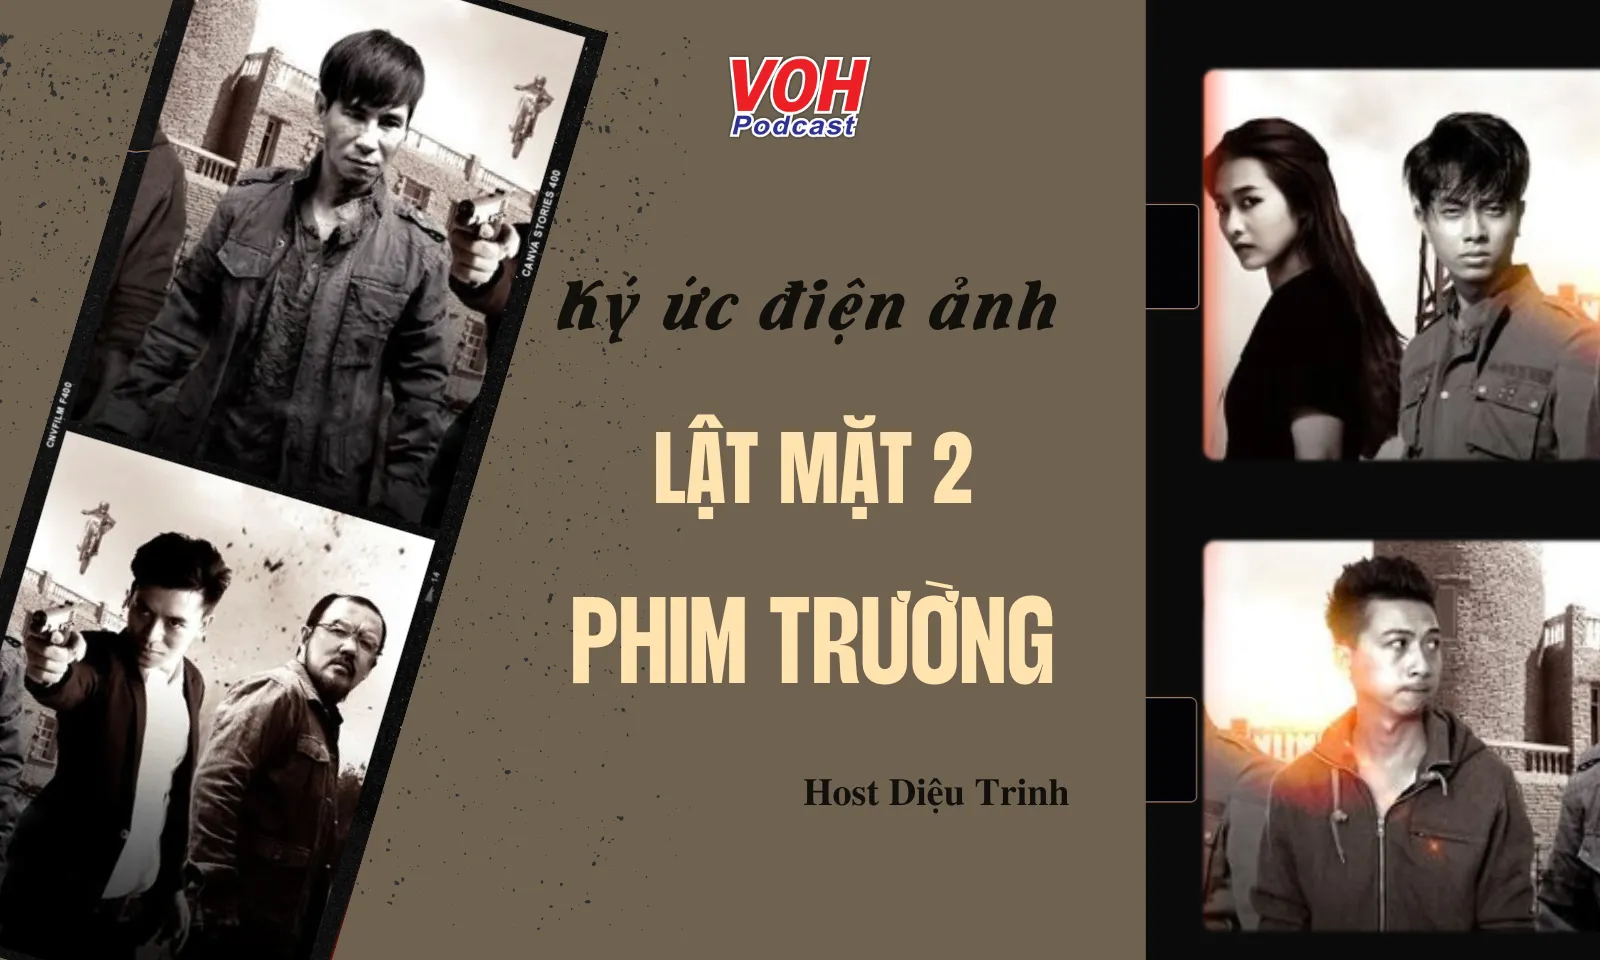 Lật Mặt 2: Phim trường - Điểm sáng cho phim Việt